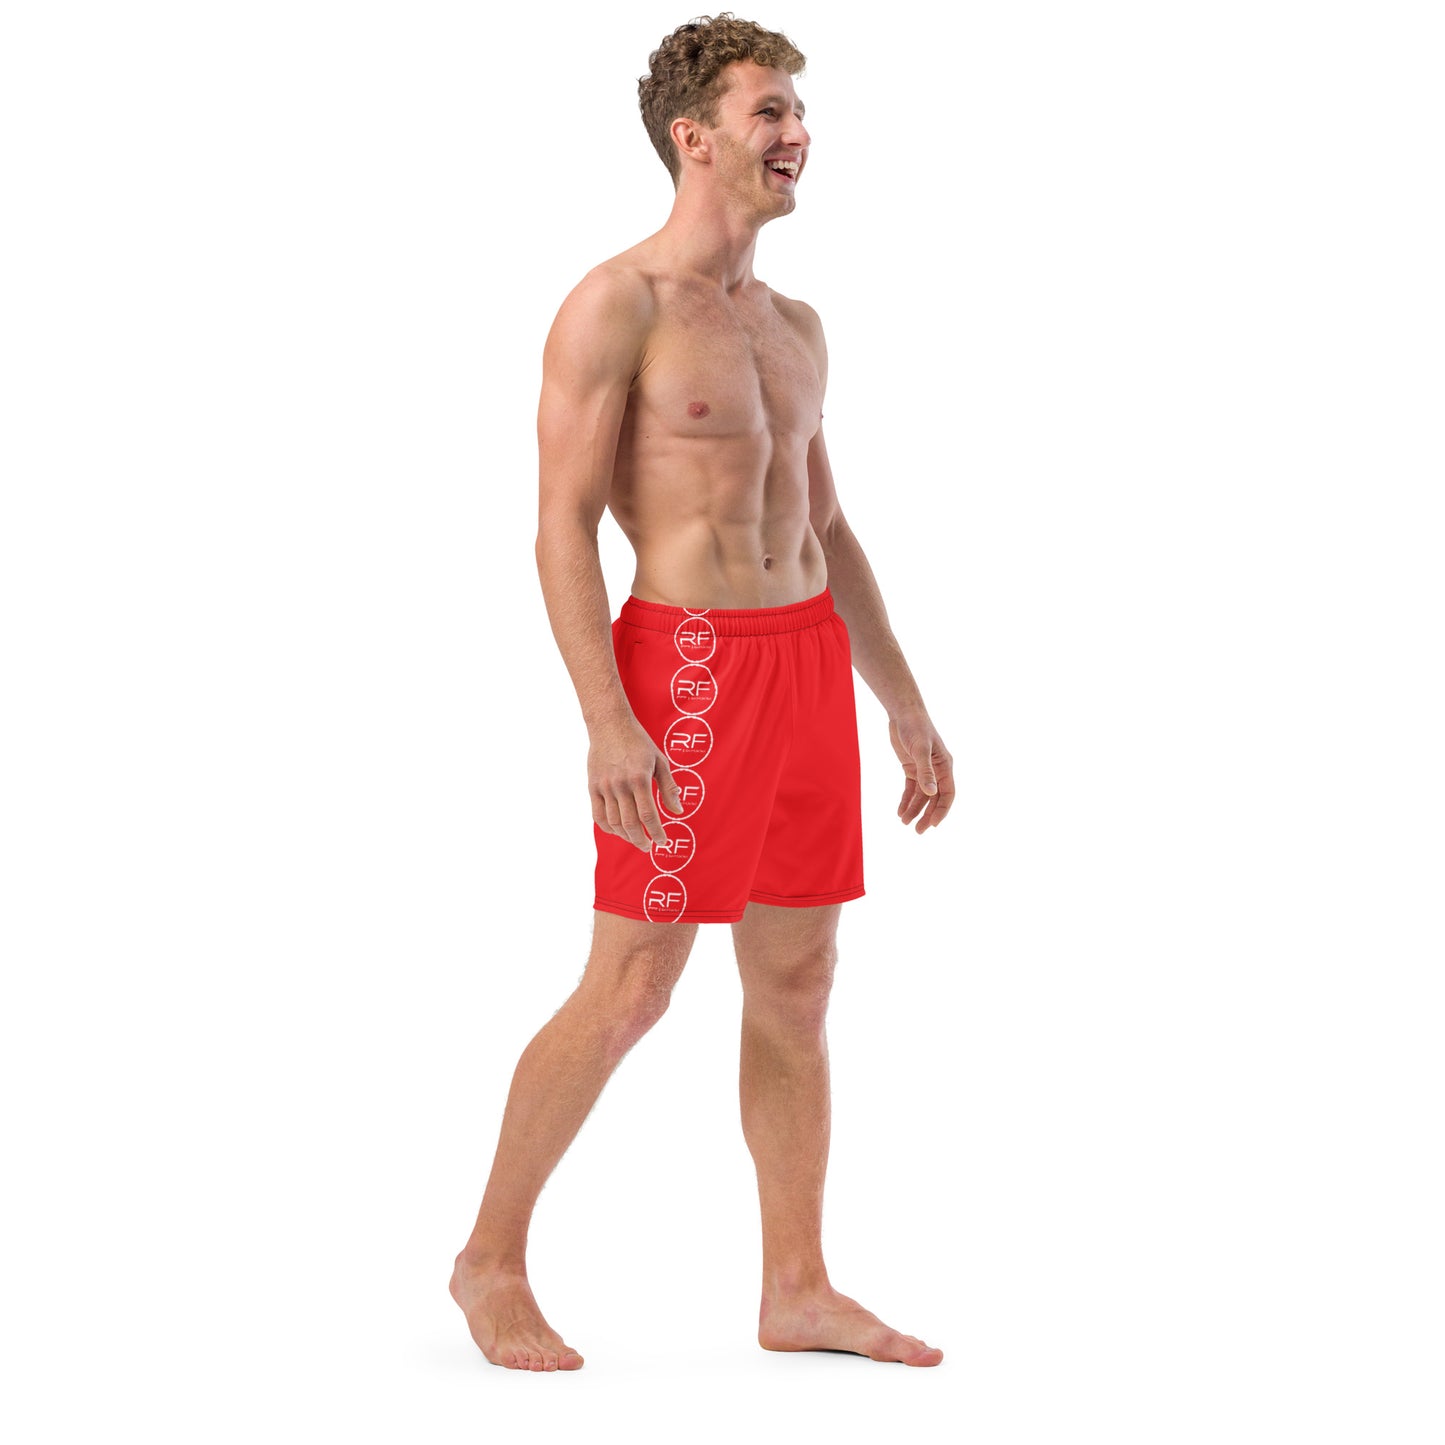 Men's RF swim trunks